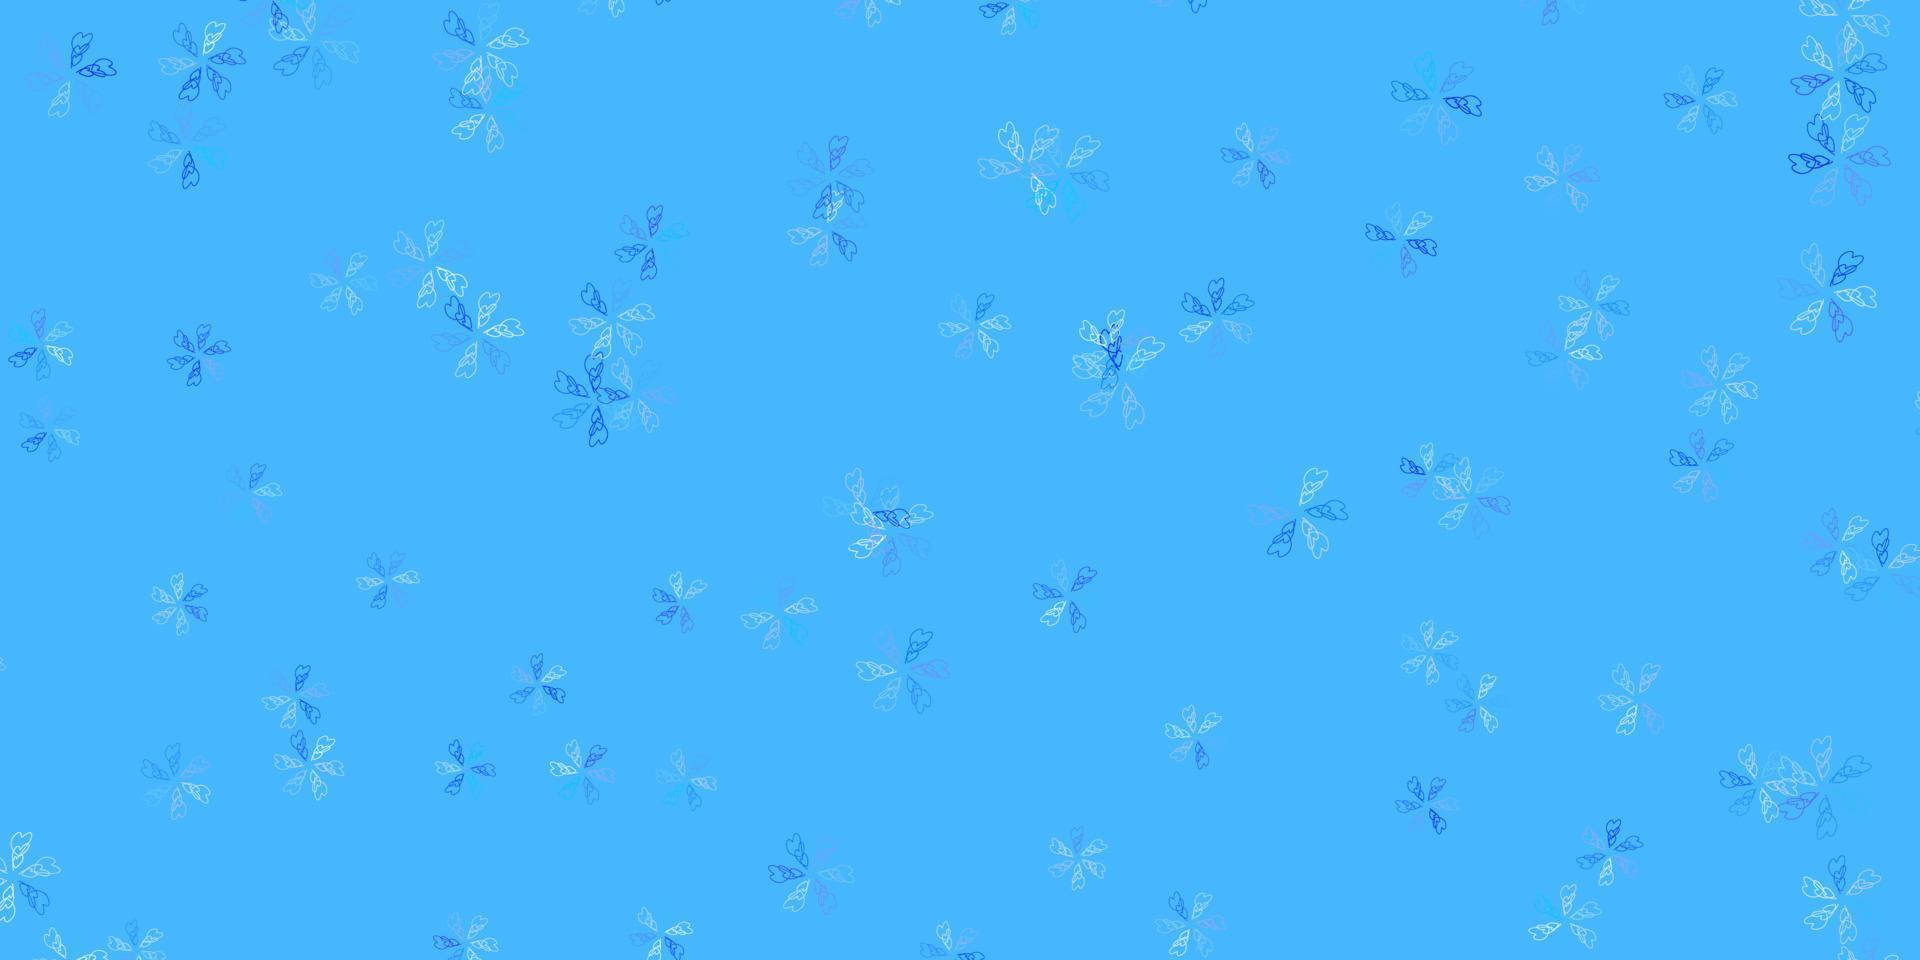 hellblauer Vektor abstrakter Hintergrund mit Blättern.